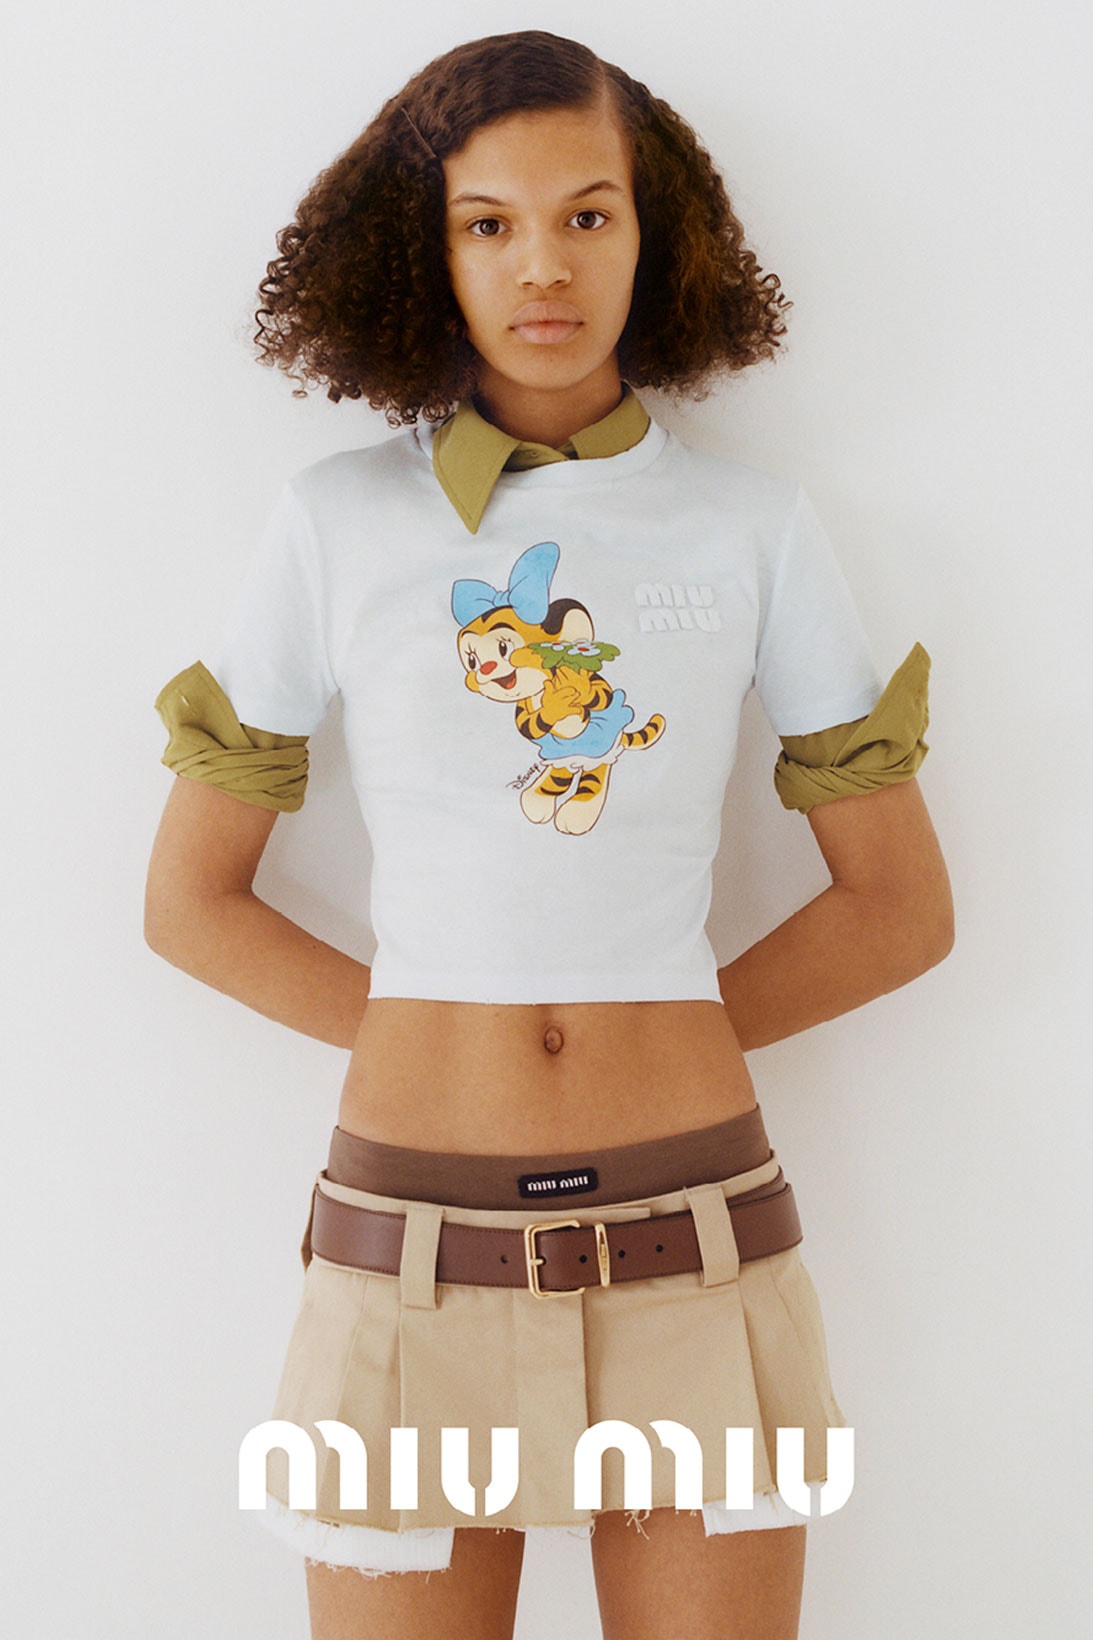 Miu Miu Lunar New Year of Tiger T-Shirt Capsule Disney Tigger Release 